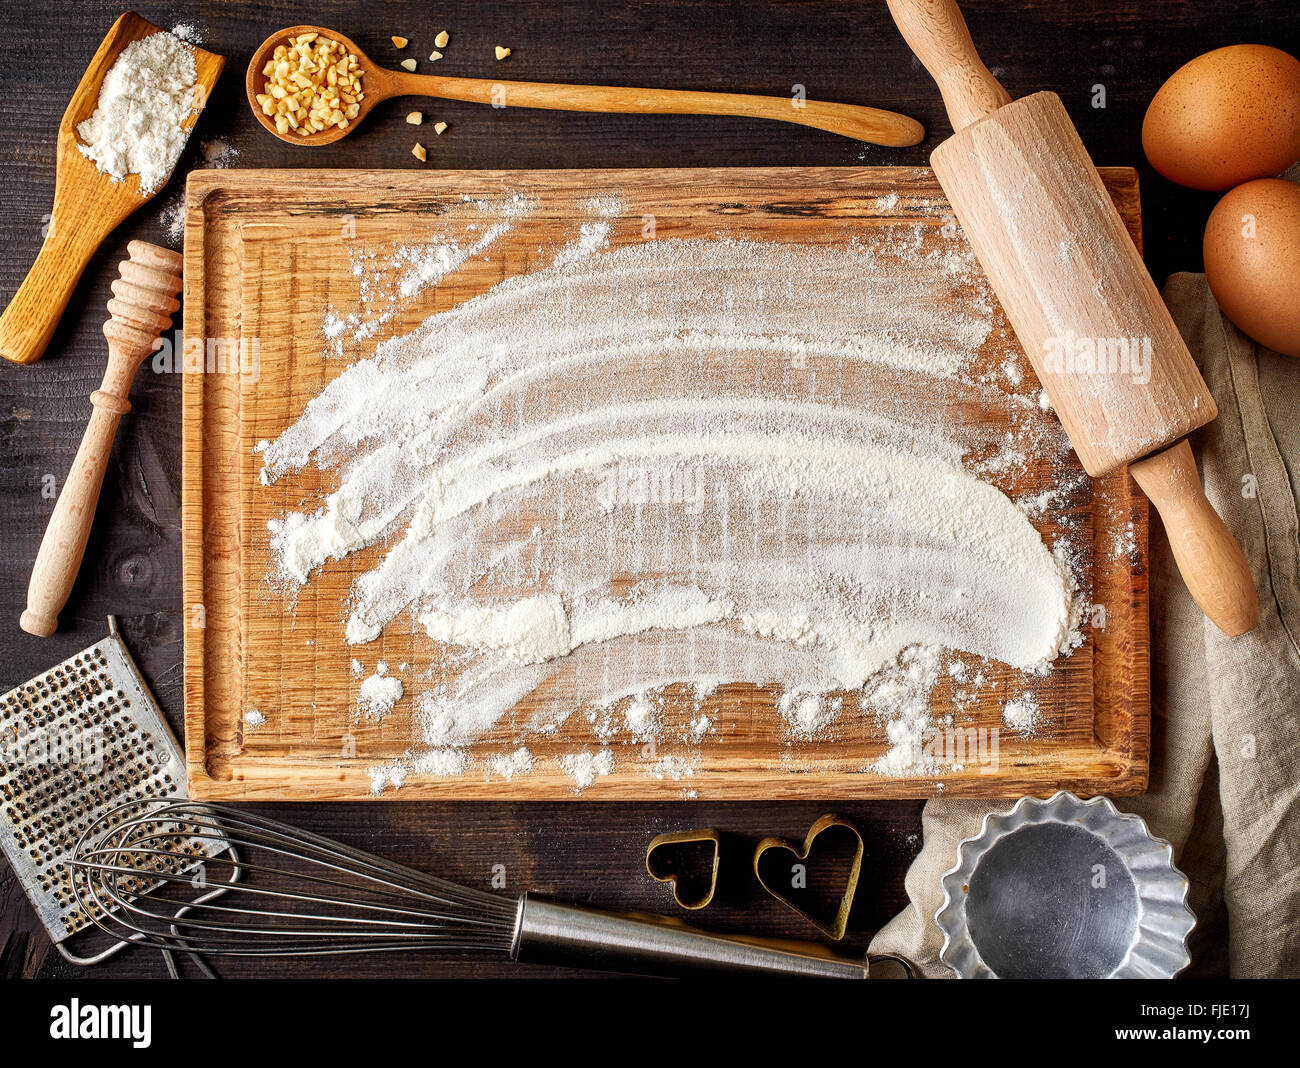 La cottura lo sfondo con il bordo di taglio, uova, zucchero, farina, mattarello, grattugia e cucchiai, vista dall'alto Foto Stock